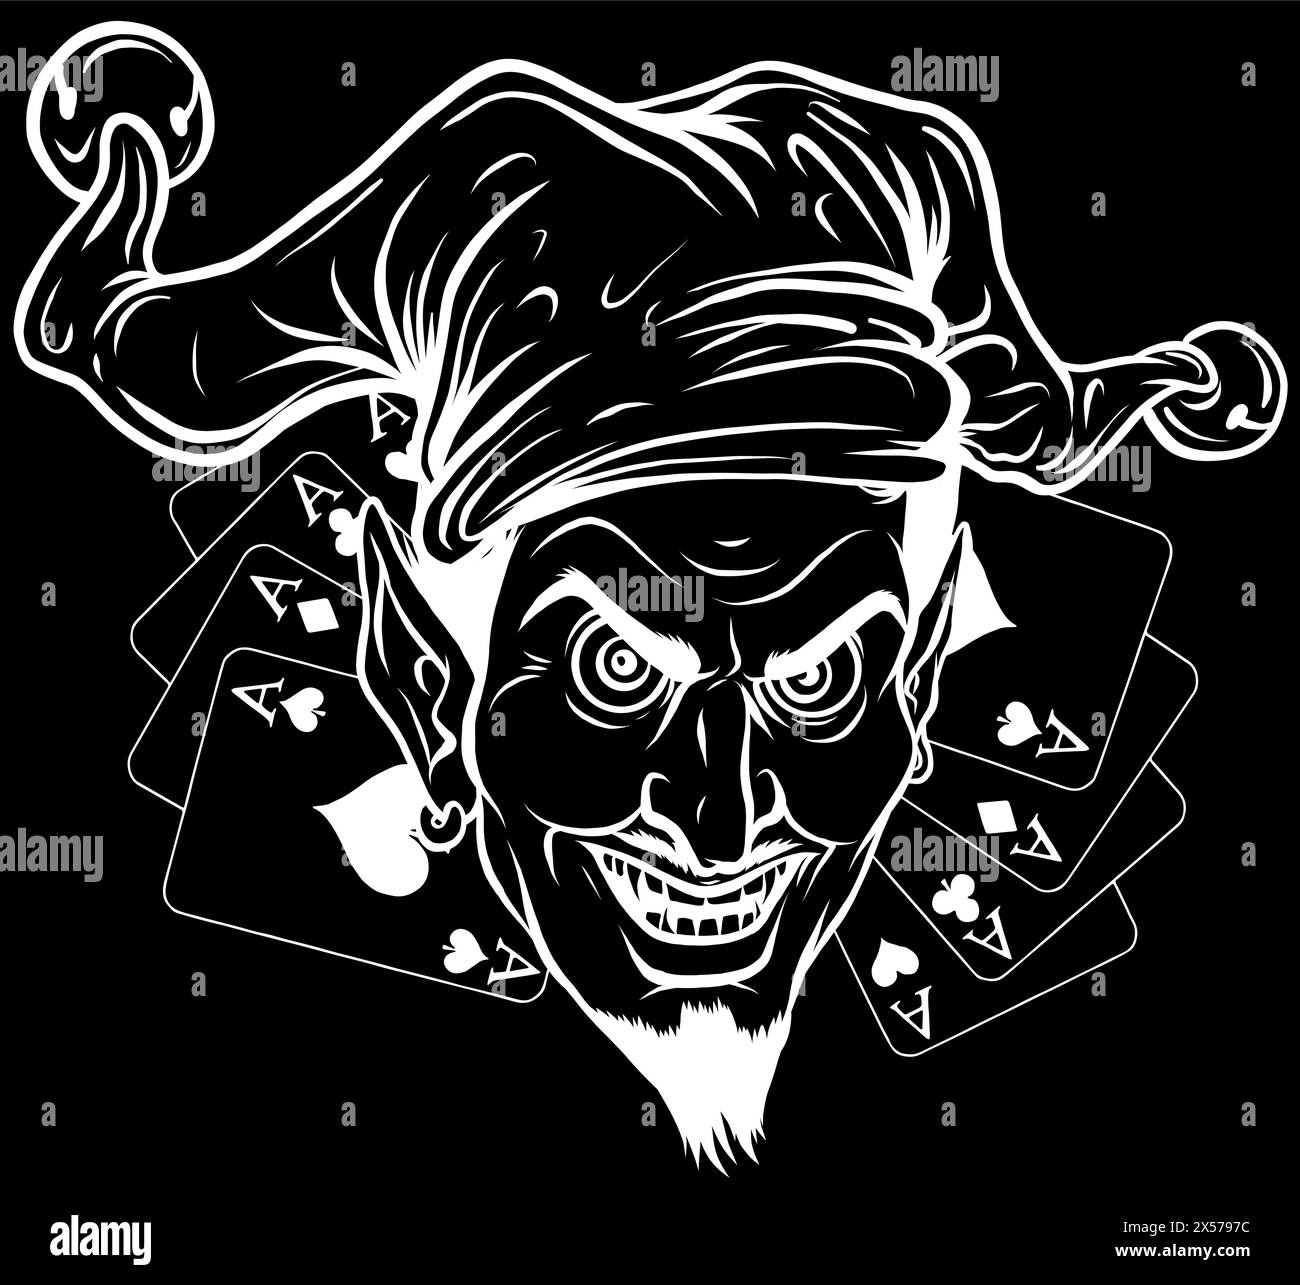 Silhouette blanche de Laughing Devil joker sur fond noir Illustration de Vecteur